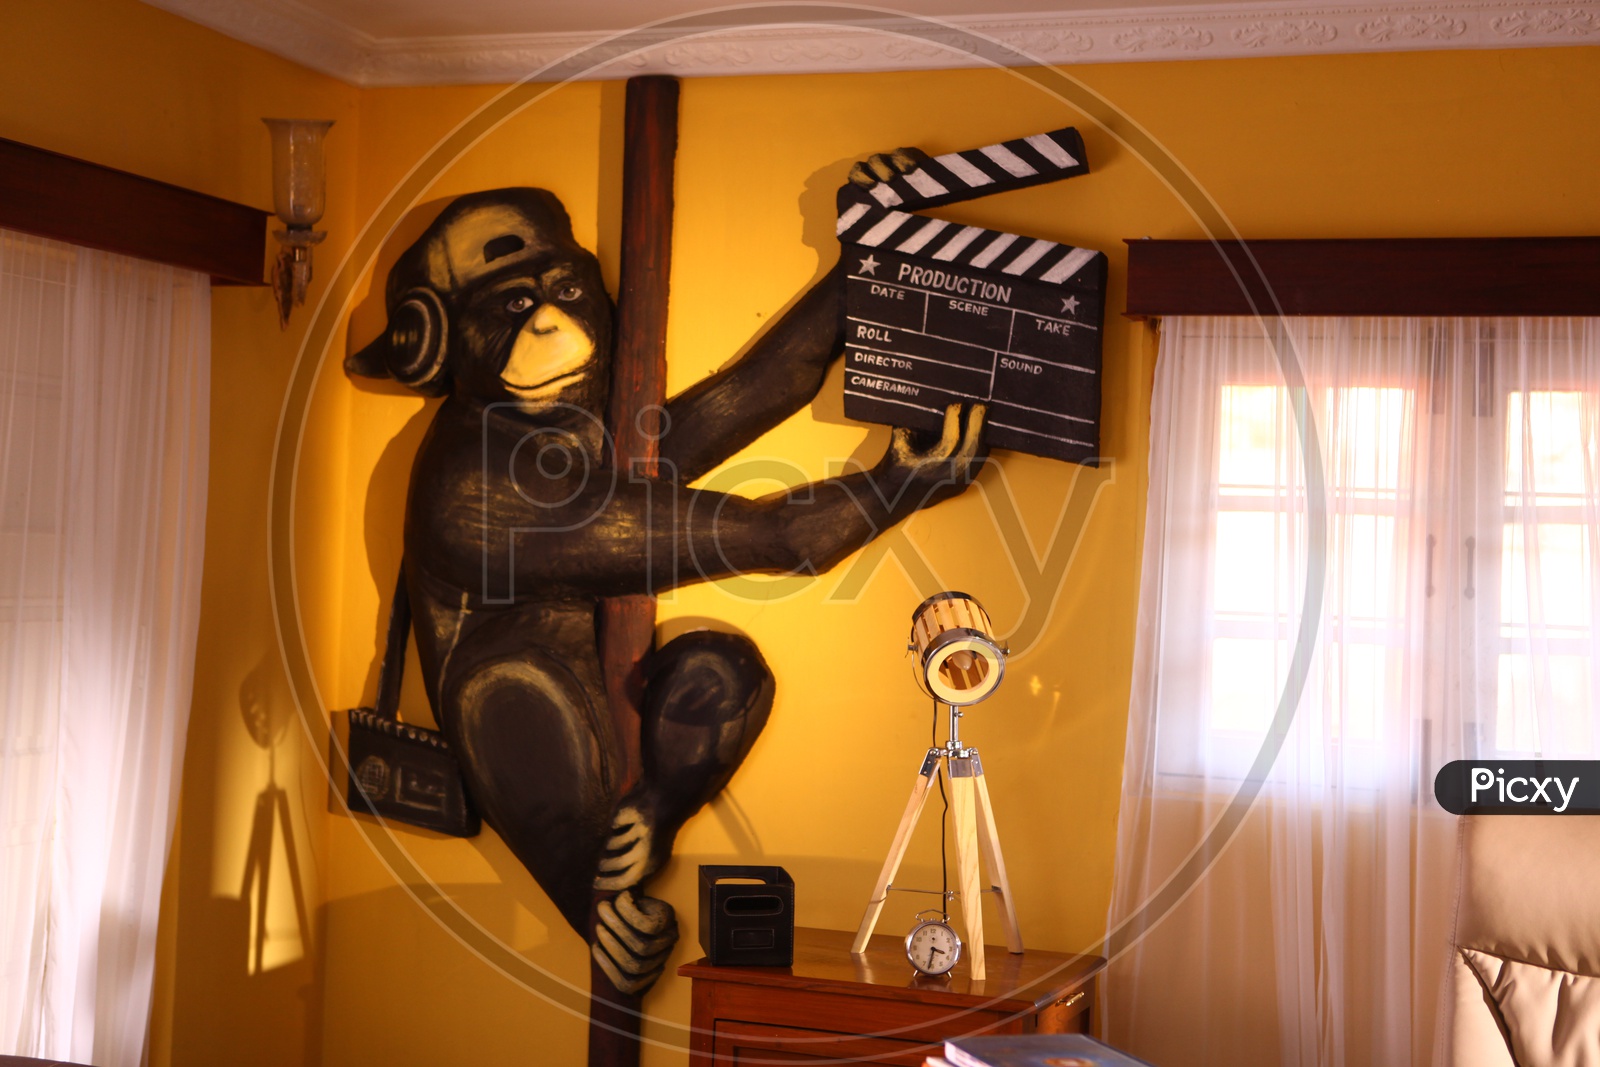 A Monkey Wall Art in a Room